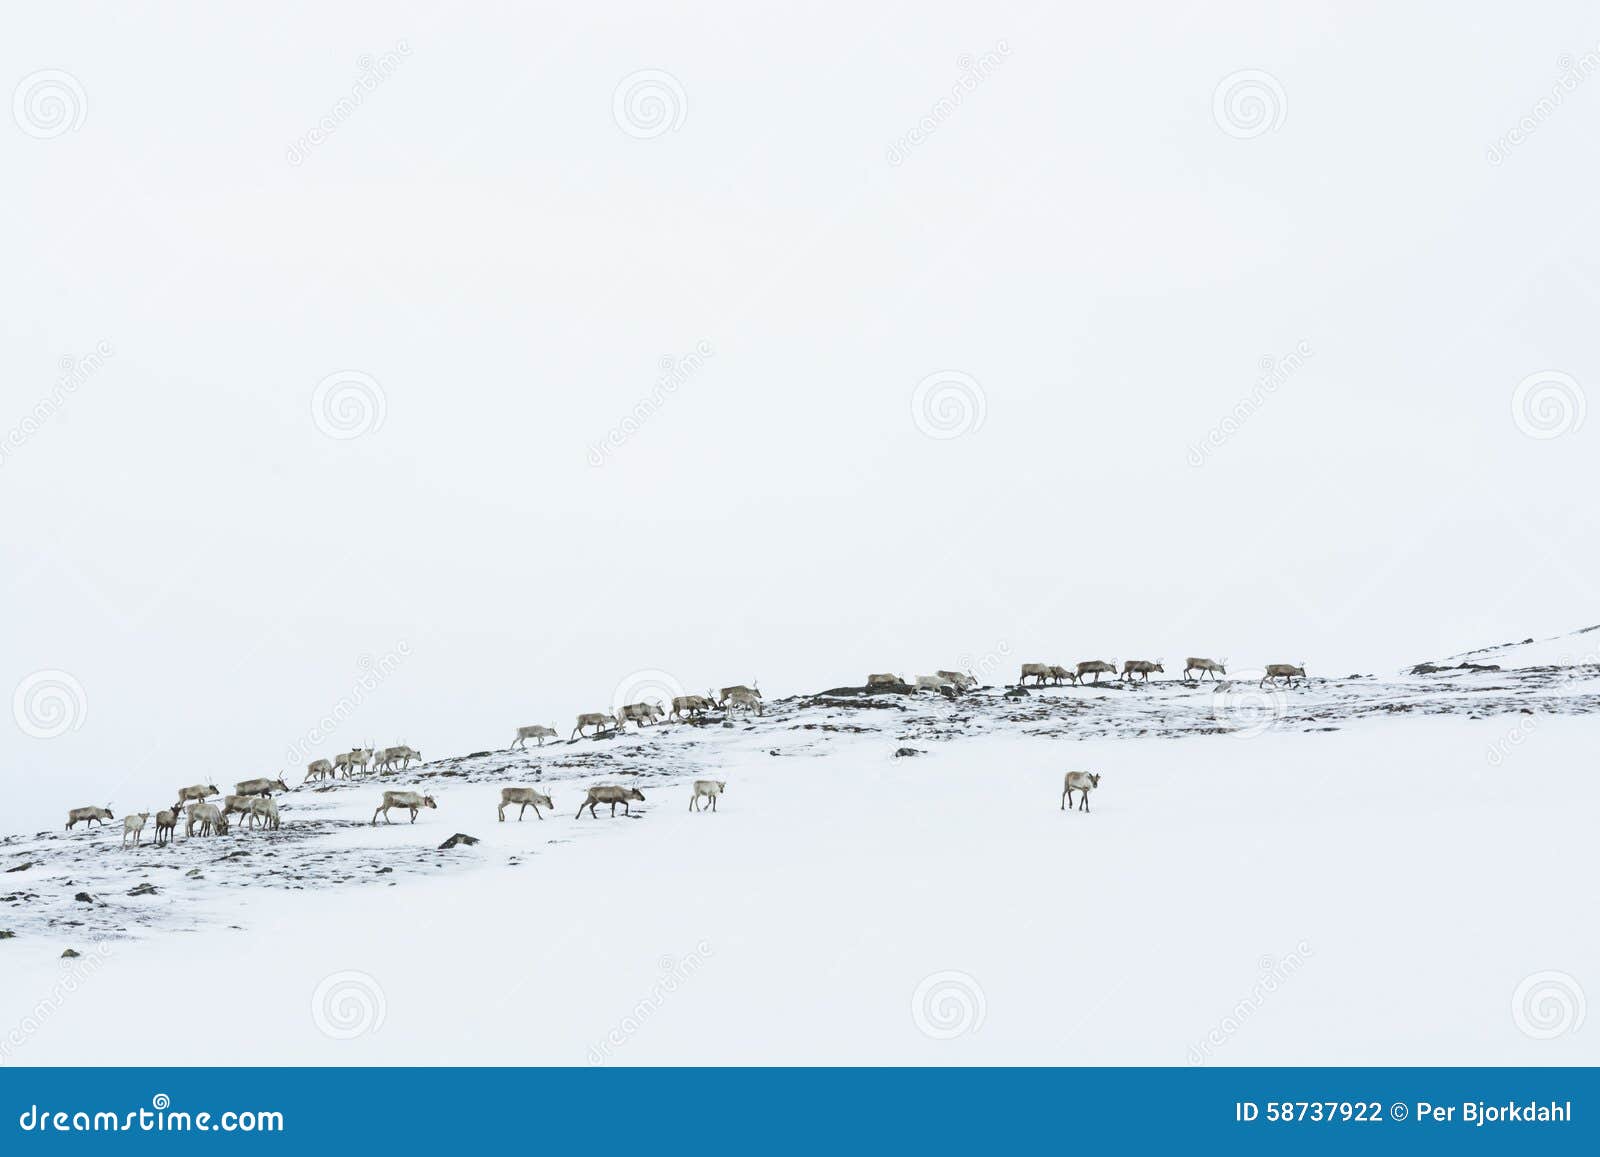 reindeer herd wintertime sweden